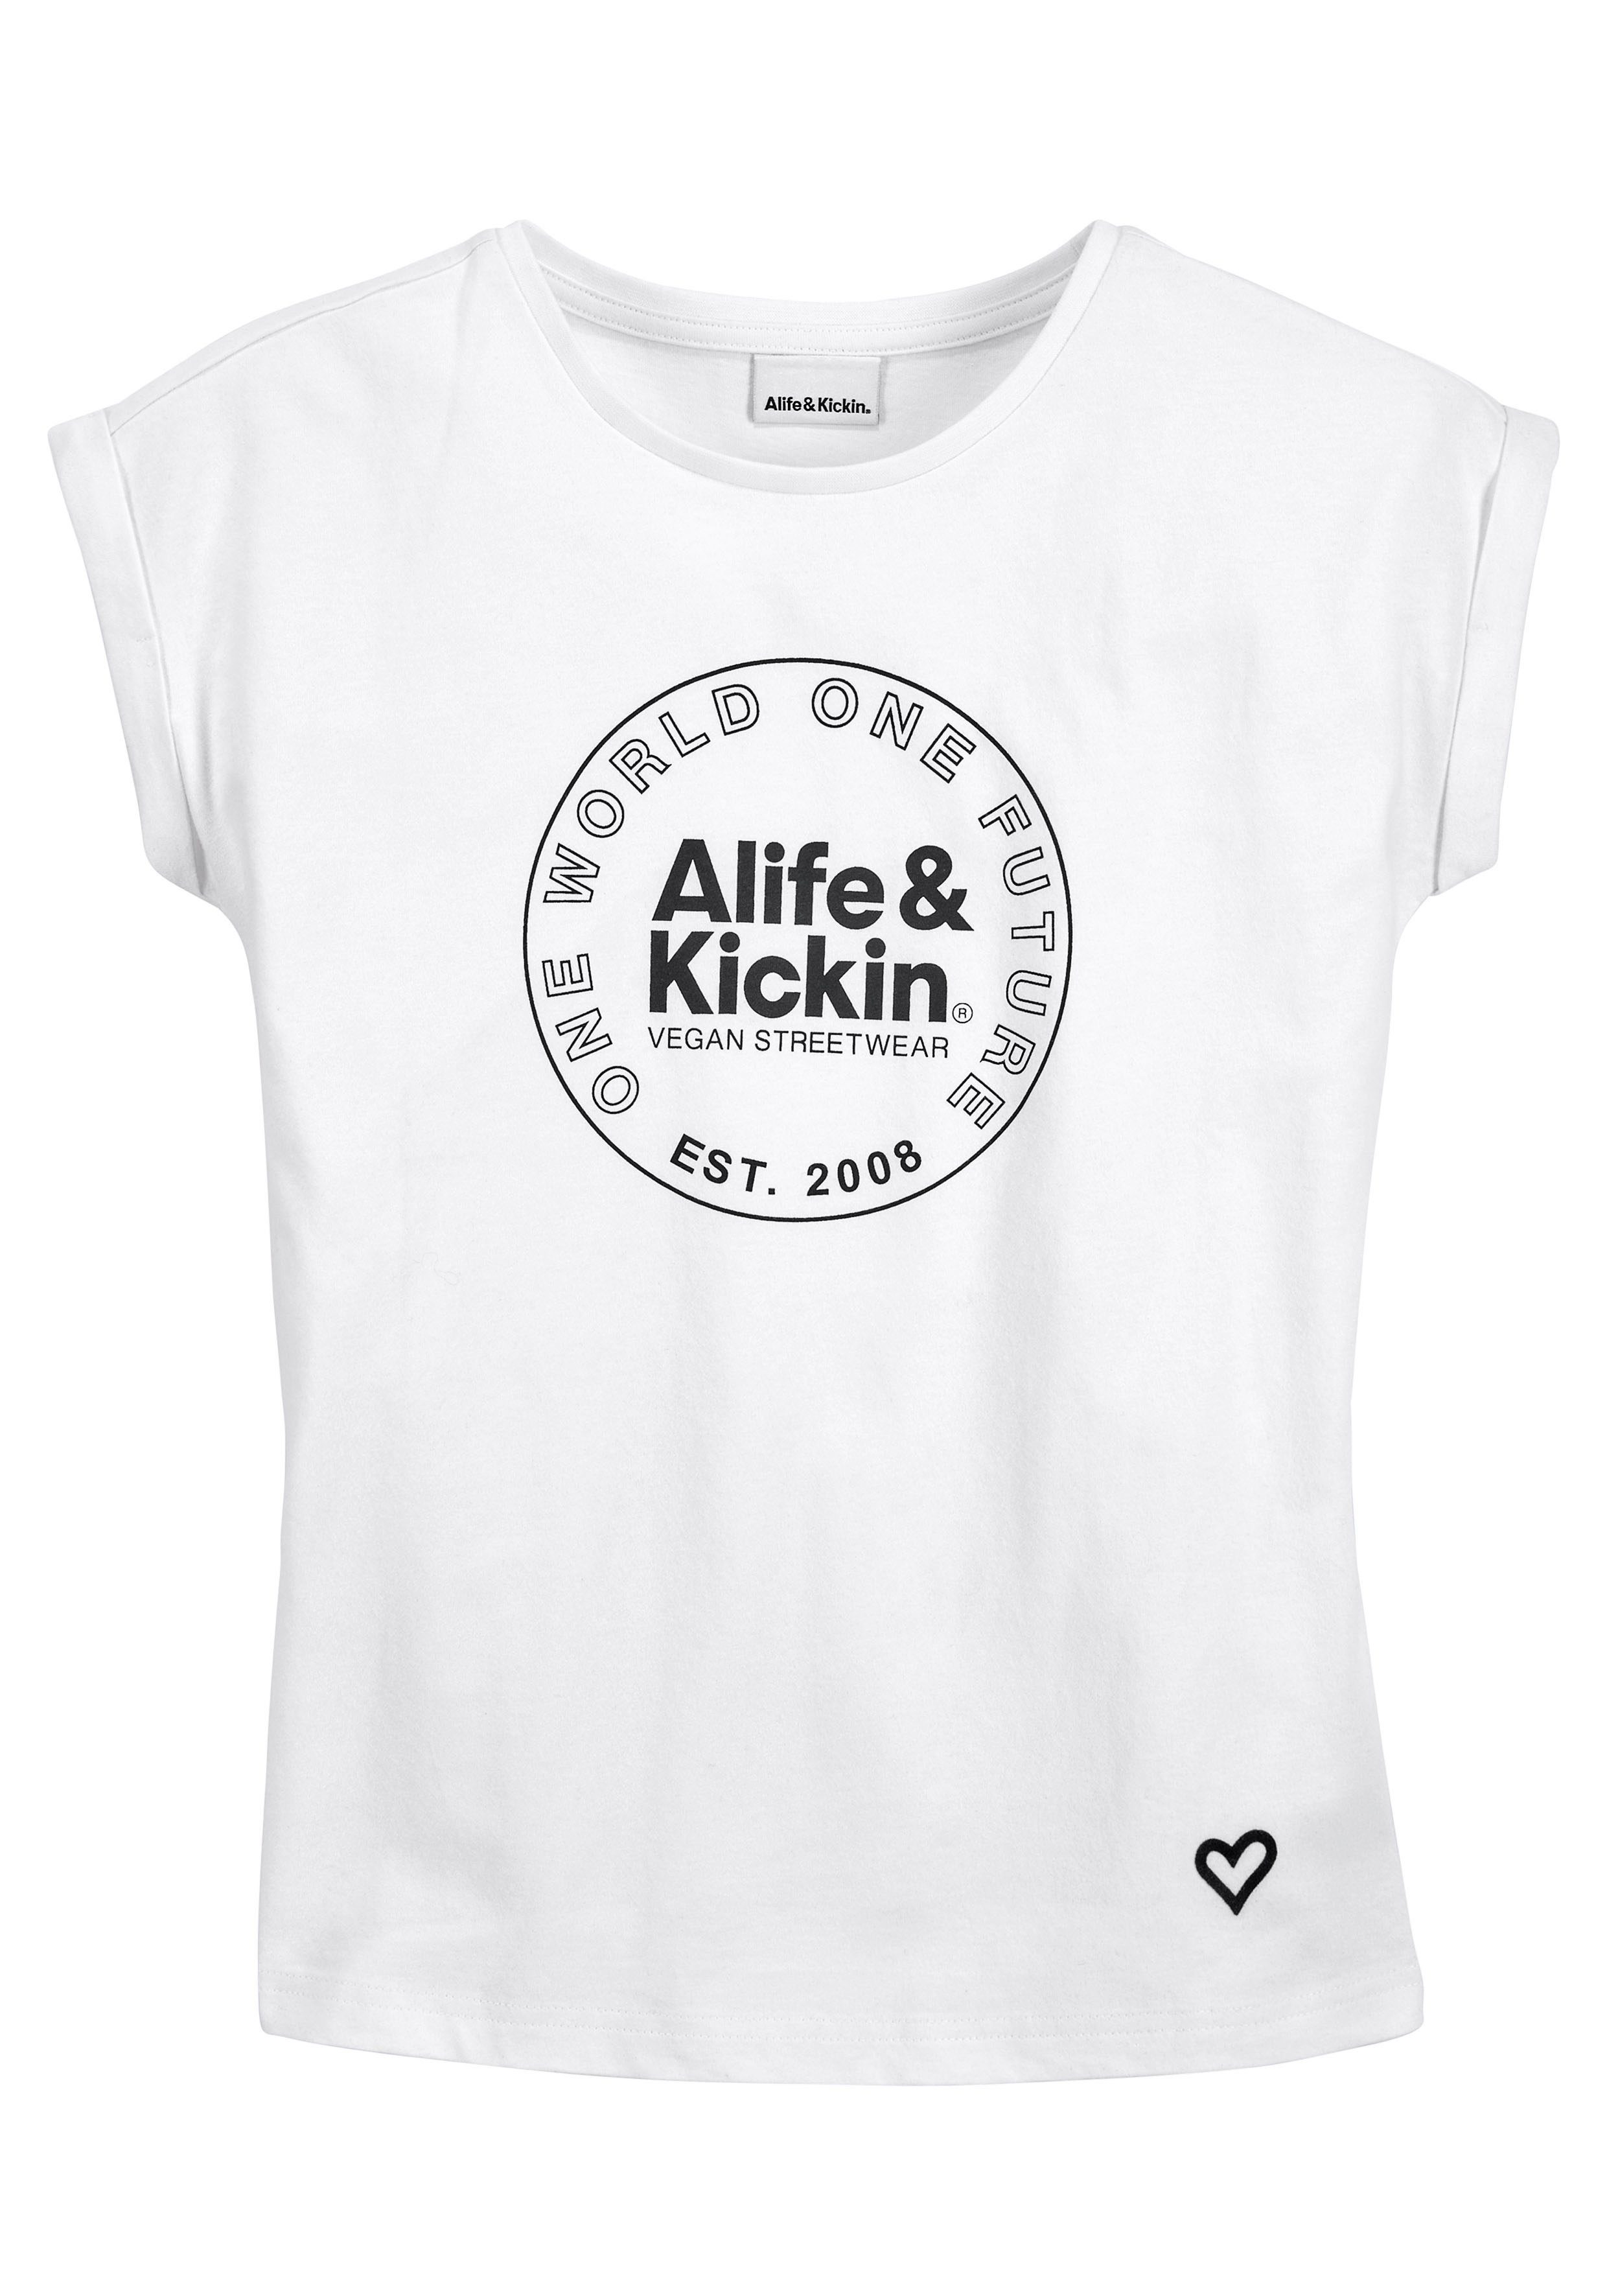 Alife & Kickin & Logo für Kickin T-Shirt MARKE! NEUE Kids. Druck, Alife mit